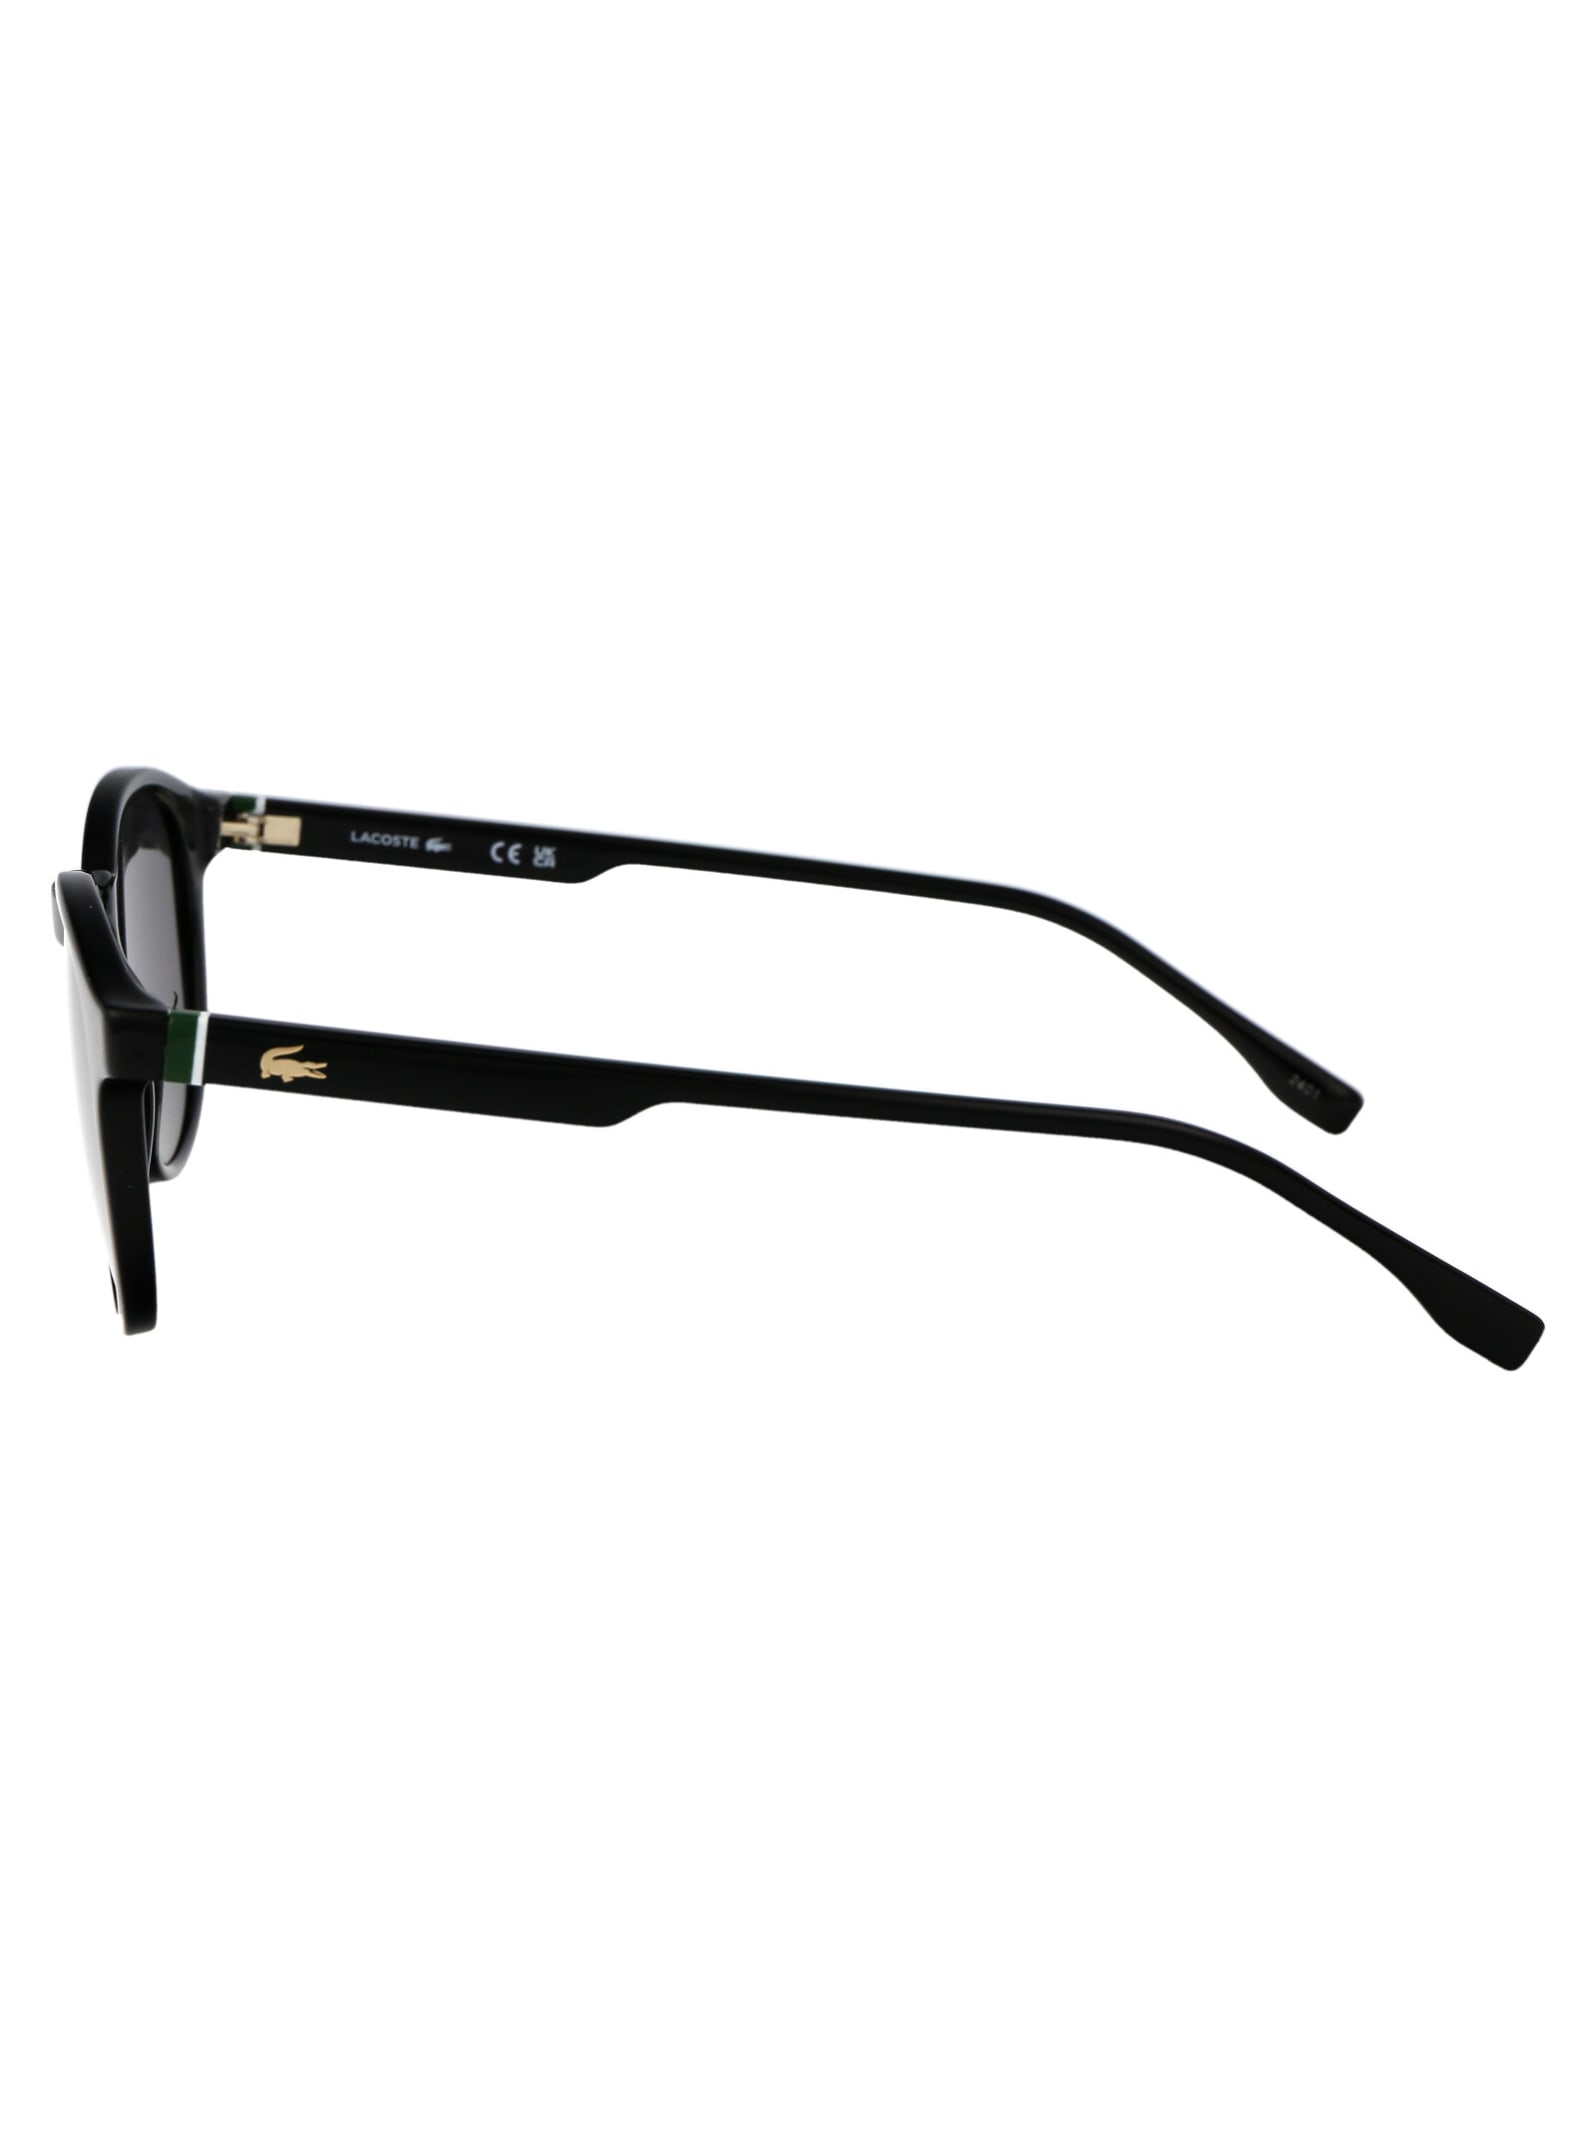 Shop Lacoste L6030s Sunglasses In 001 Black